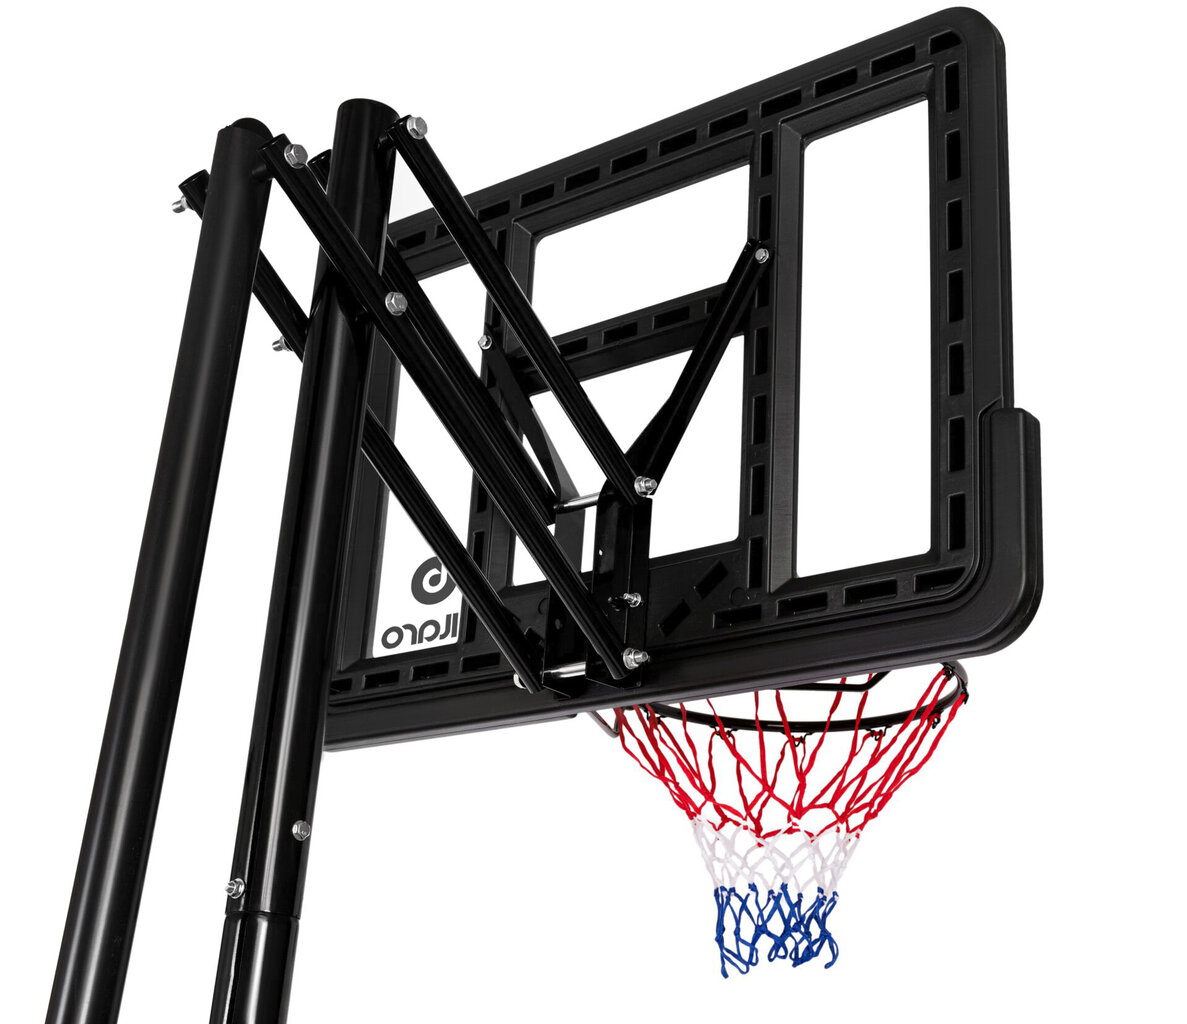 Įbetonuojamas krepšinio stovas Bilaro Portland, 110x75 cm цена и информация | Krepšinio stovai | pigu.lt